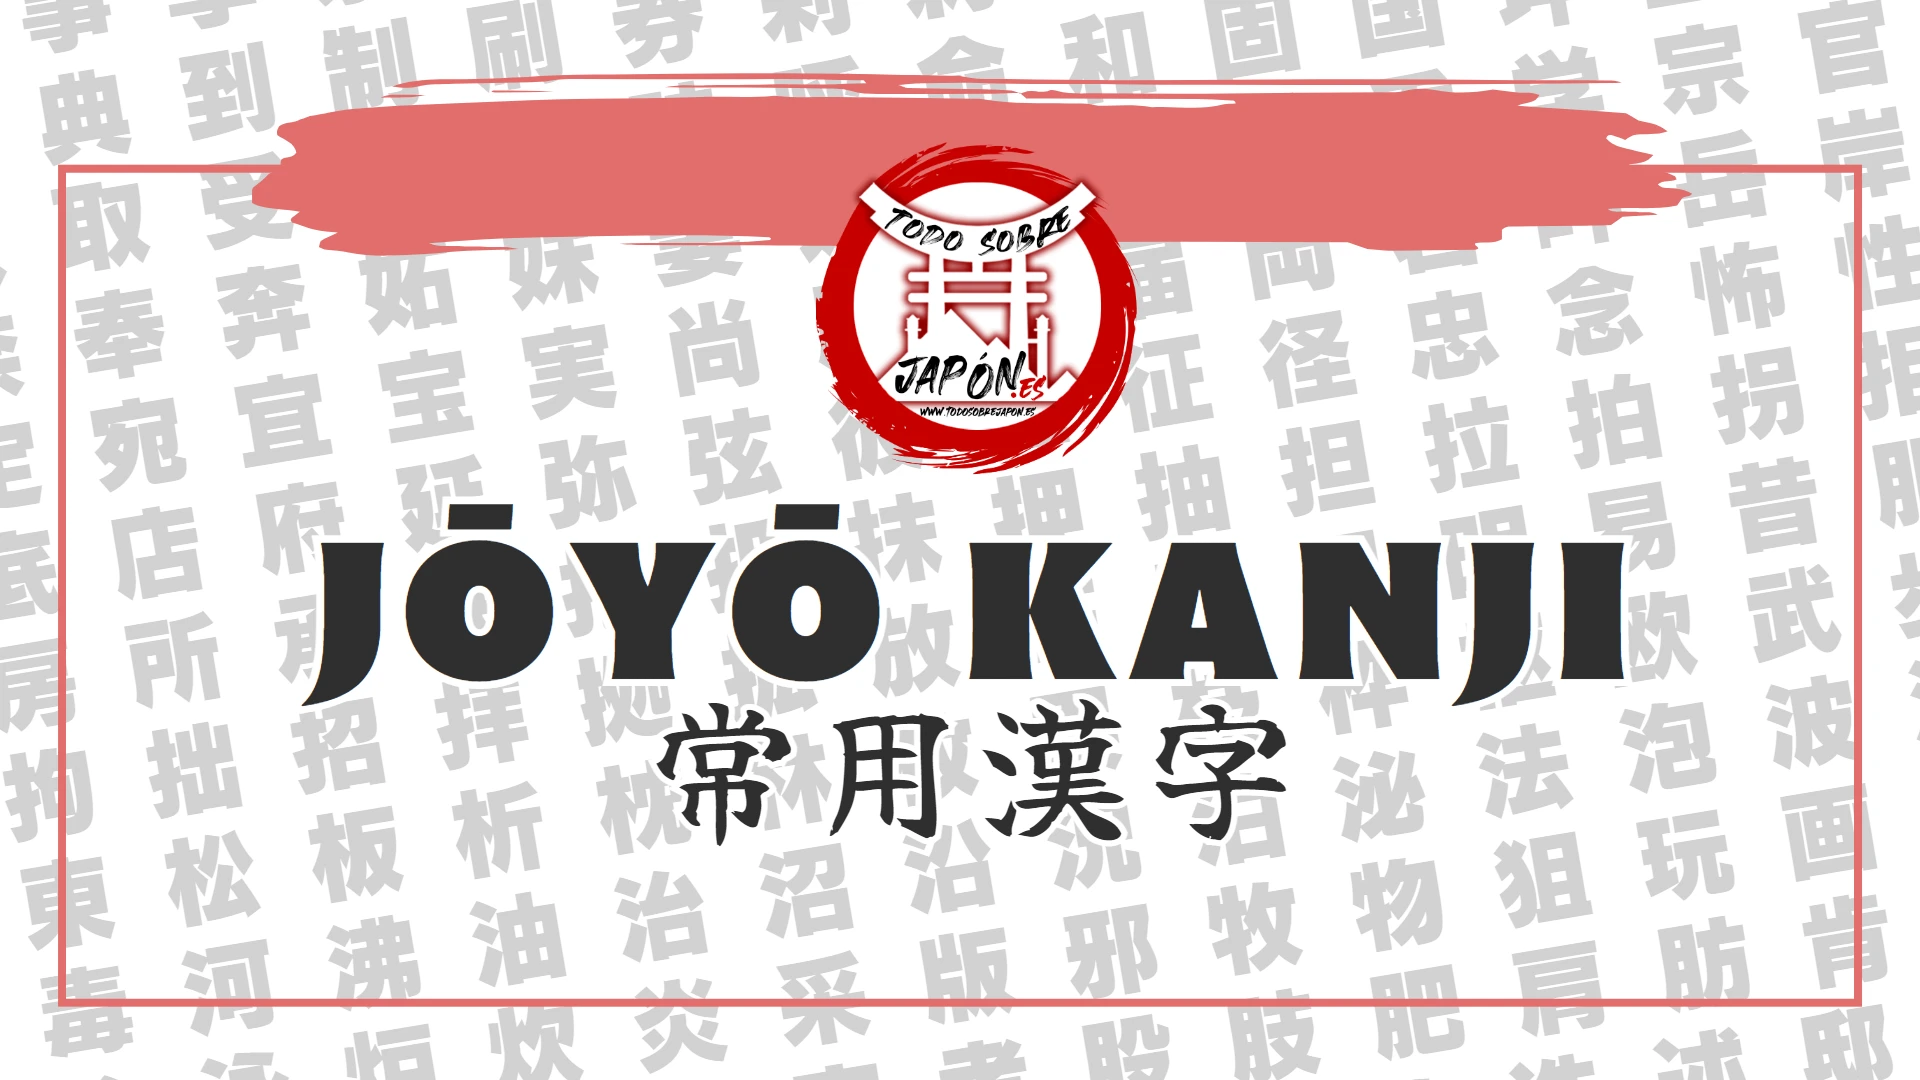 joyo kanji